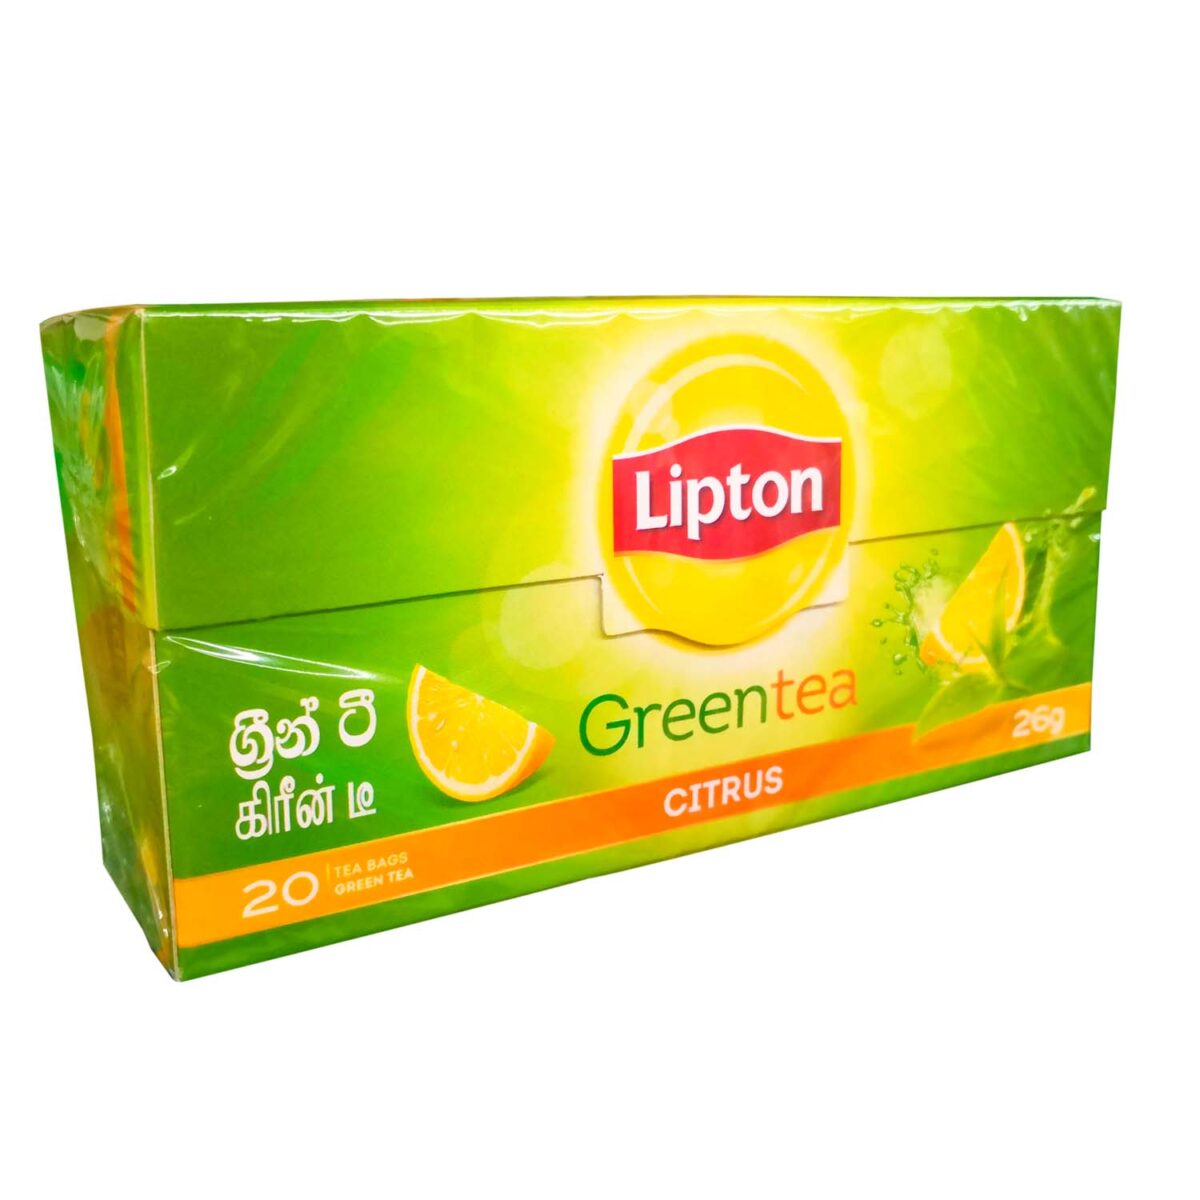 Ceylon Lipton Green Tea with Citrus Flavor tea bags